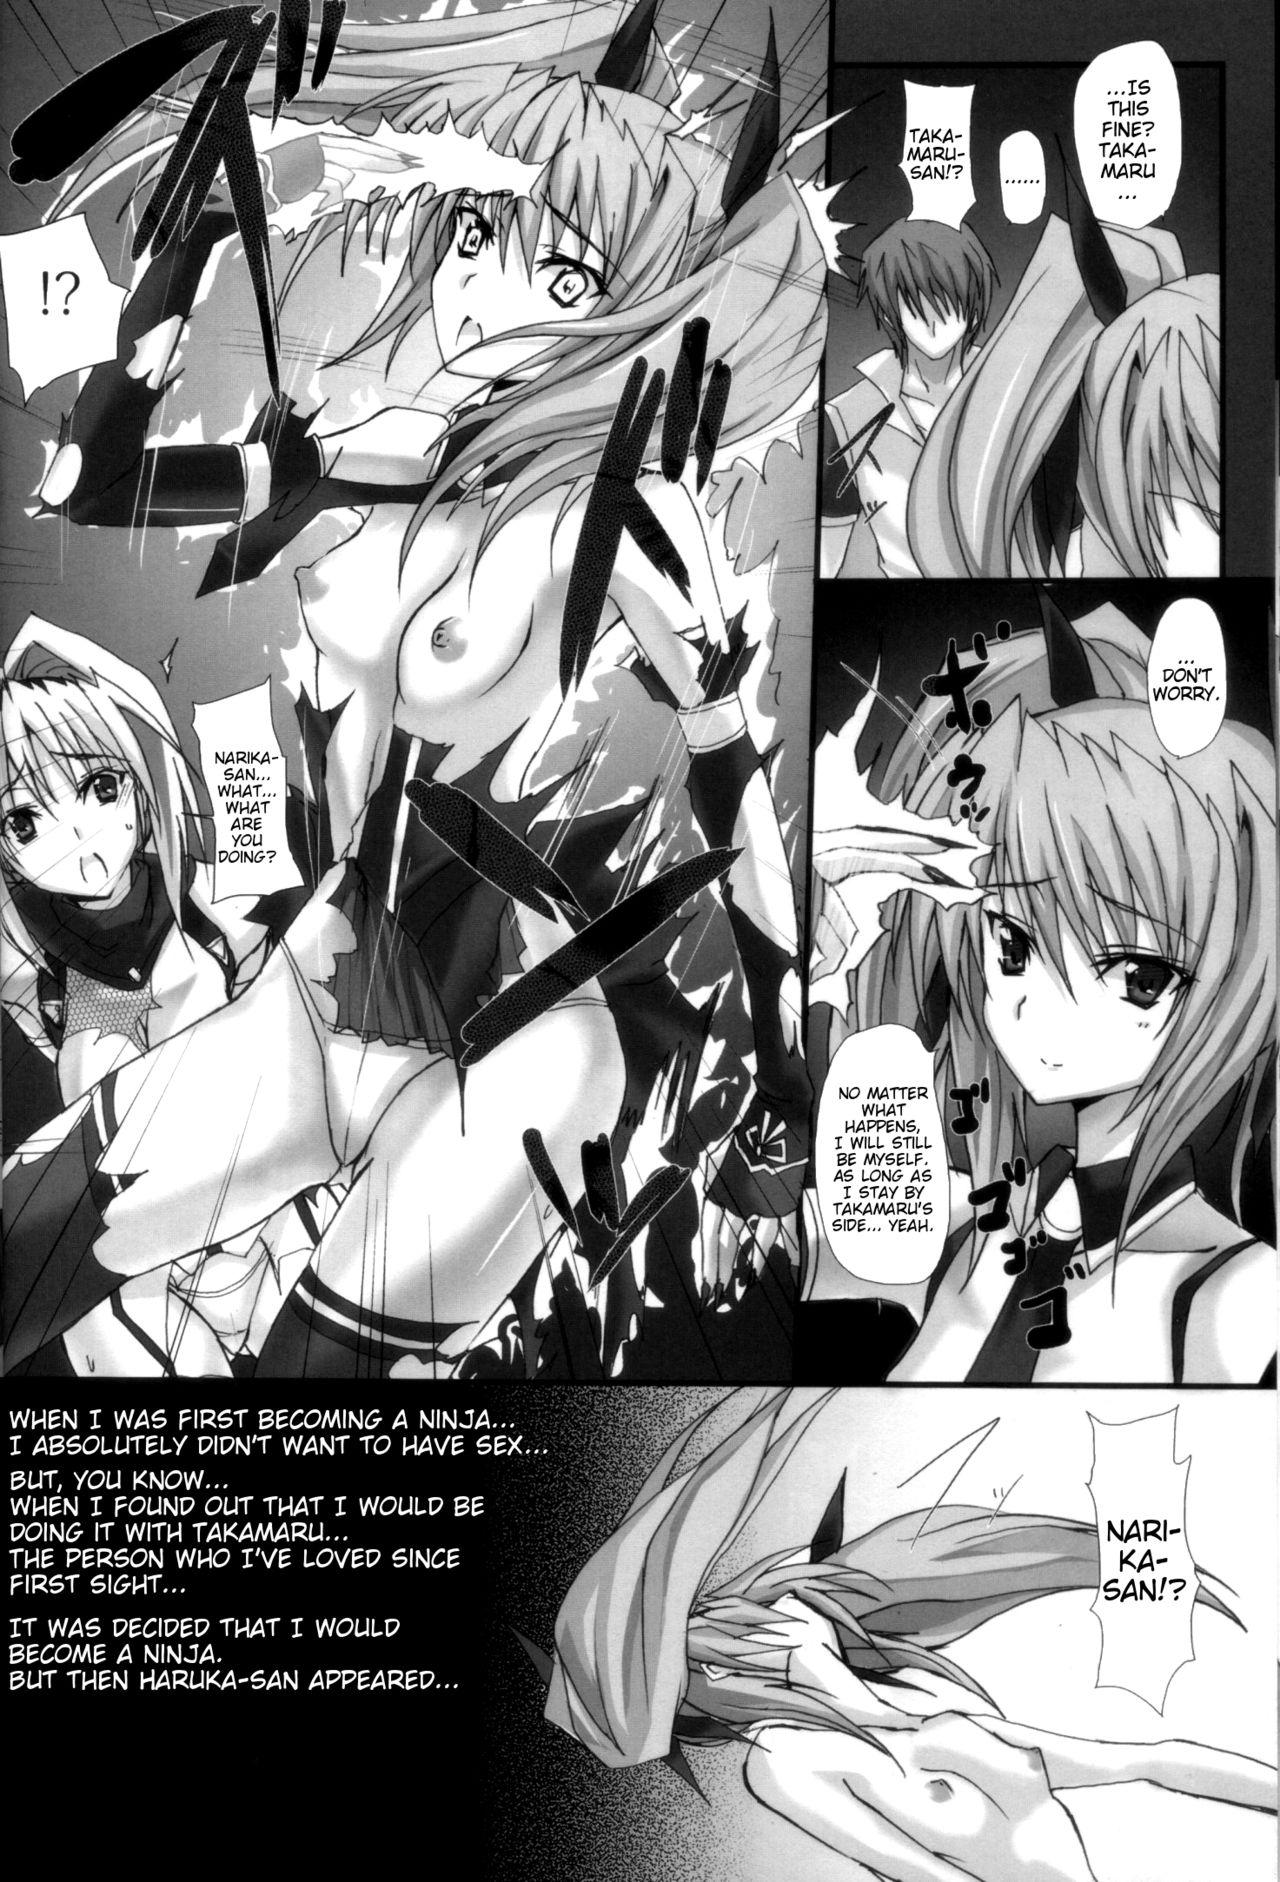 Hot Pussy Yami wo Matoishi Homura wa Ono ga Mi wo Boukyaku no Gokuen e - Beat blades haruka Cum Inside - Page 11